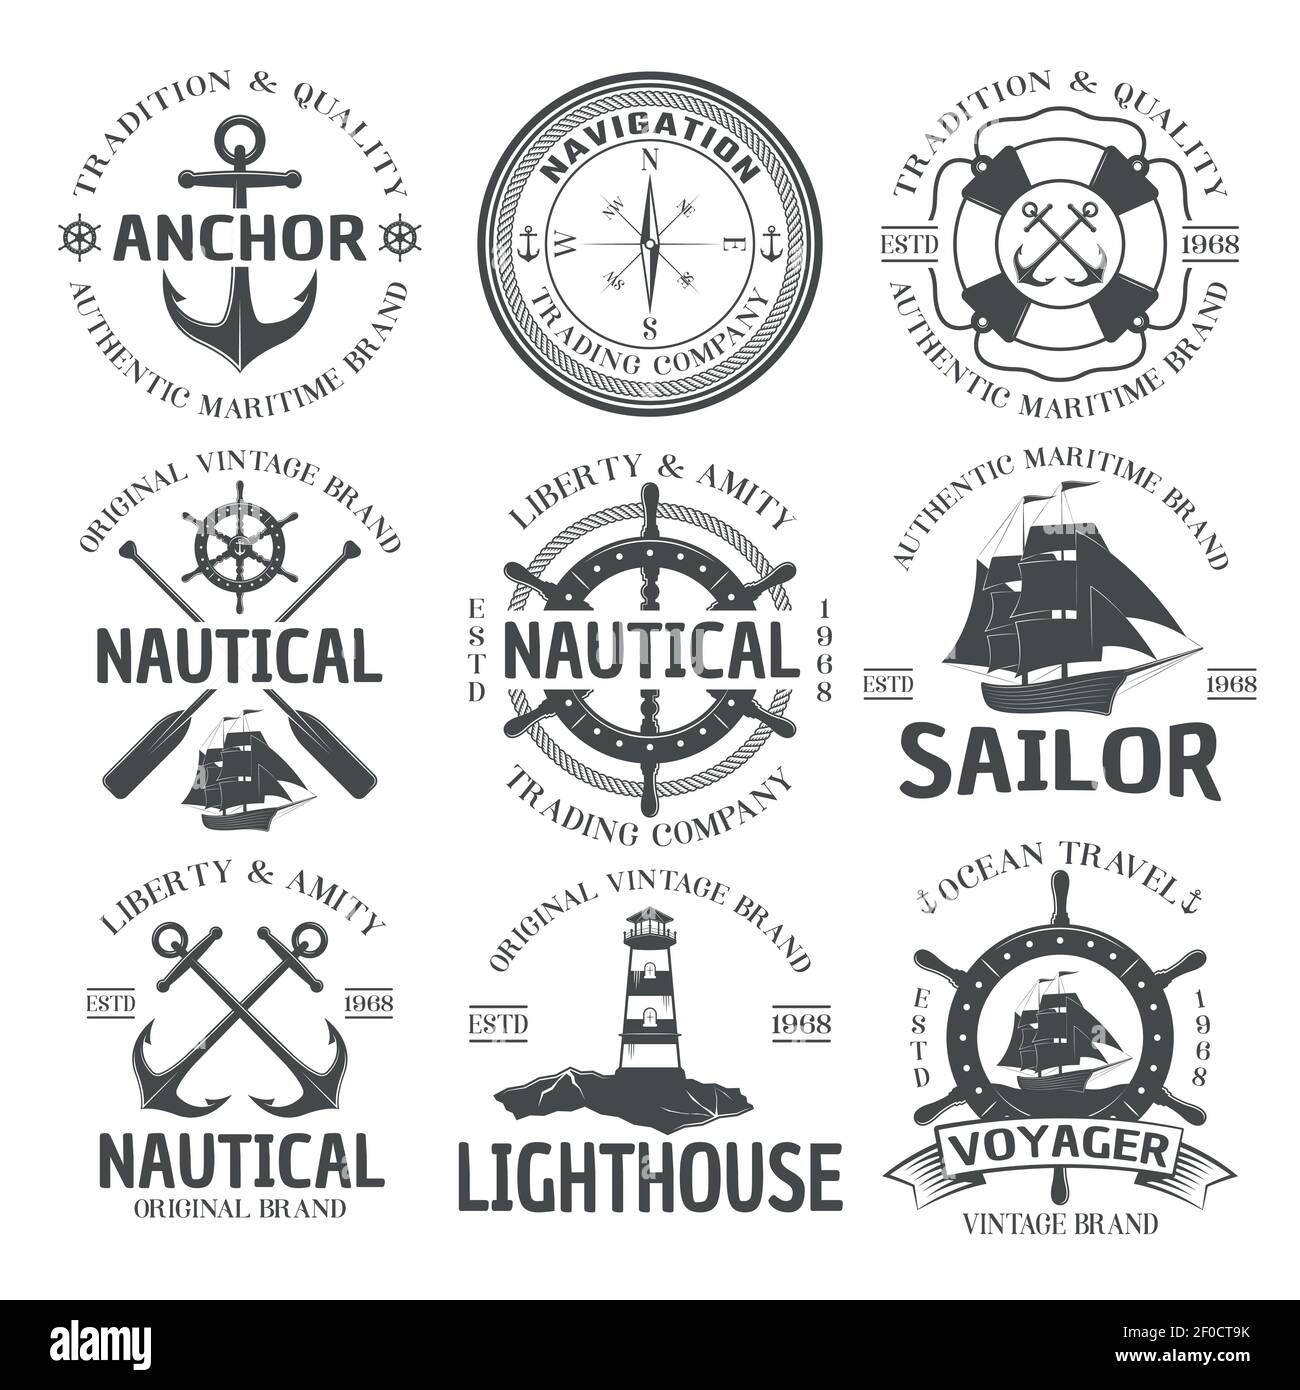 Emblème nautique avec ancre authentique navigation de marque maritime compagnie nautique original vintage descriptions de marque illustration vectorielle Illustration de Vecteur